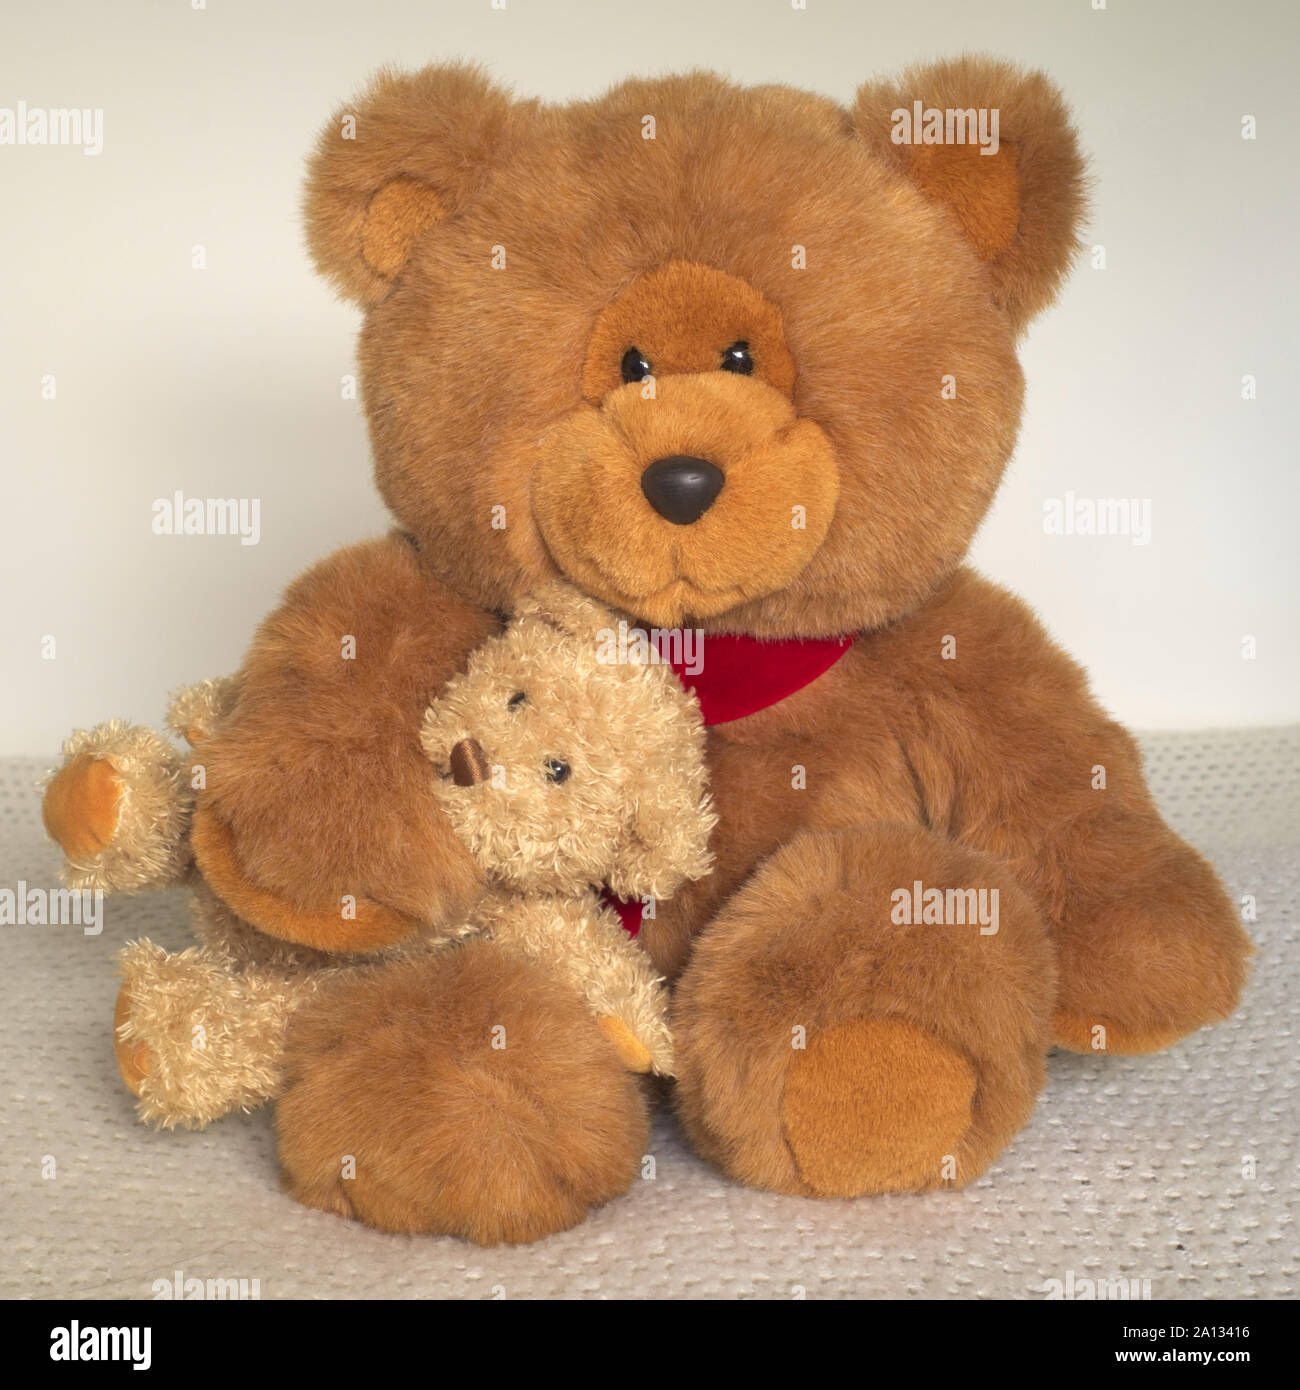 Medium Brown Teddy Bear, With Light Brown Teddy Bear Under His Arm Stock Photo